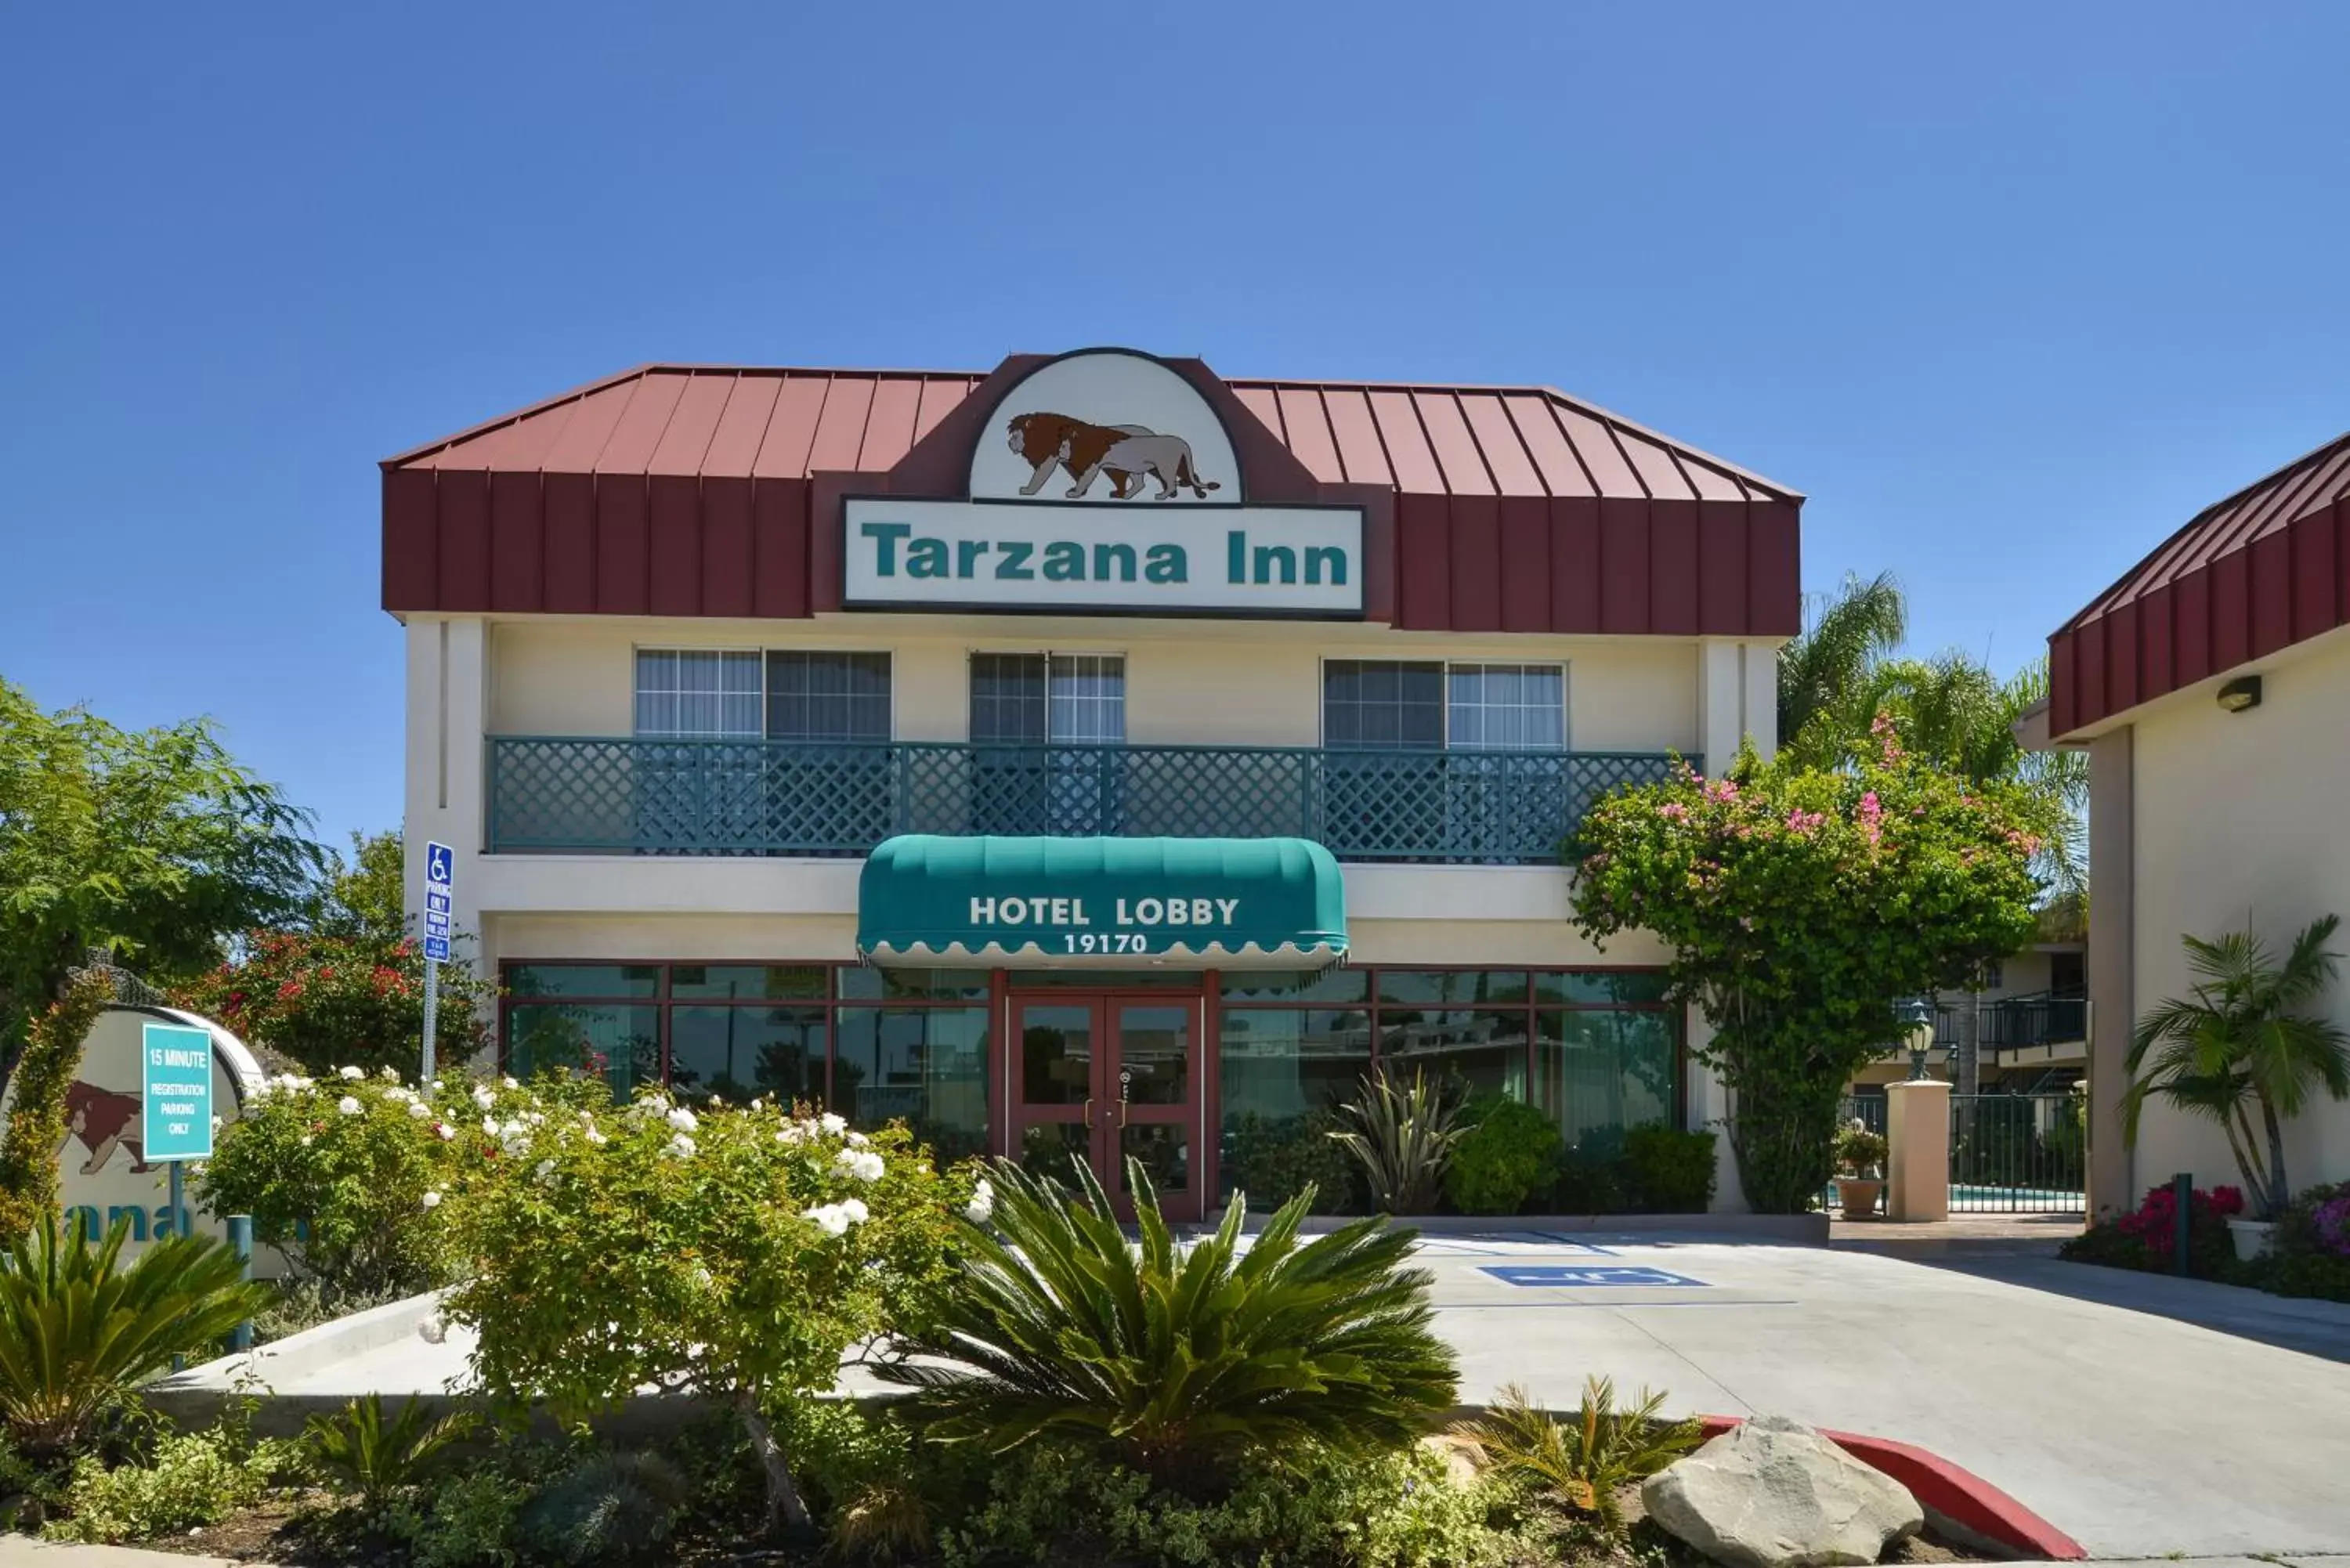 Facade/entrance, Property Building in Tarzana Inn